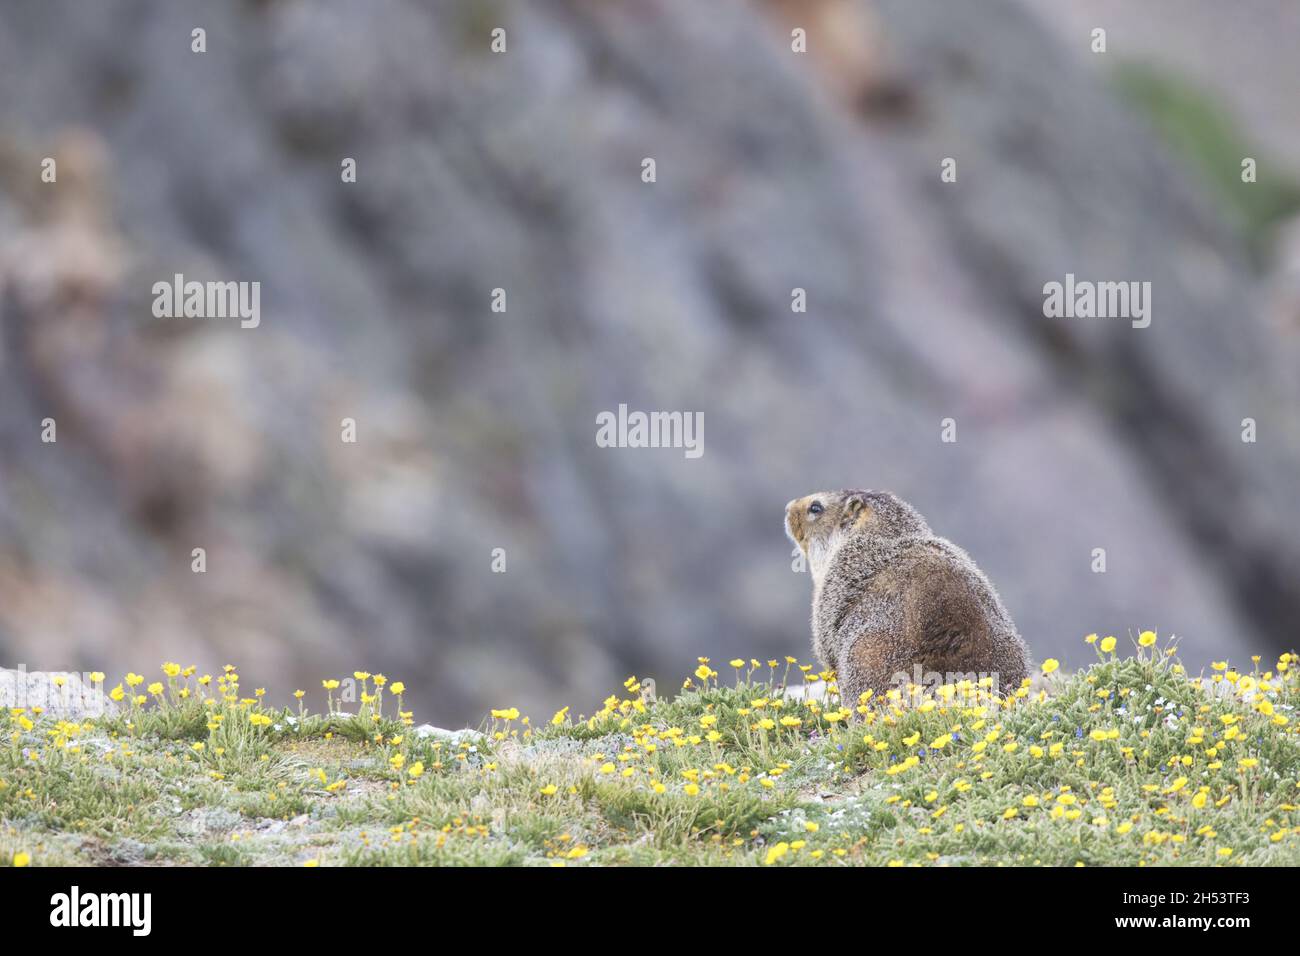 Marmotte à ventre jaune au bord de la falaise des prairies alpines domine les hautes élévations du col de Beartooth et des montagnes Absaroka de la route pittoresque américaine Banque D'Images